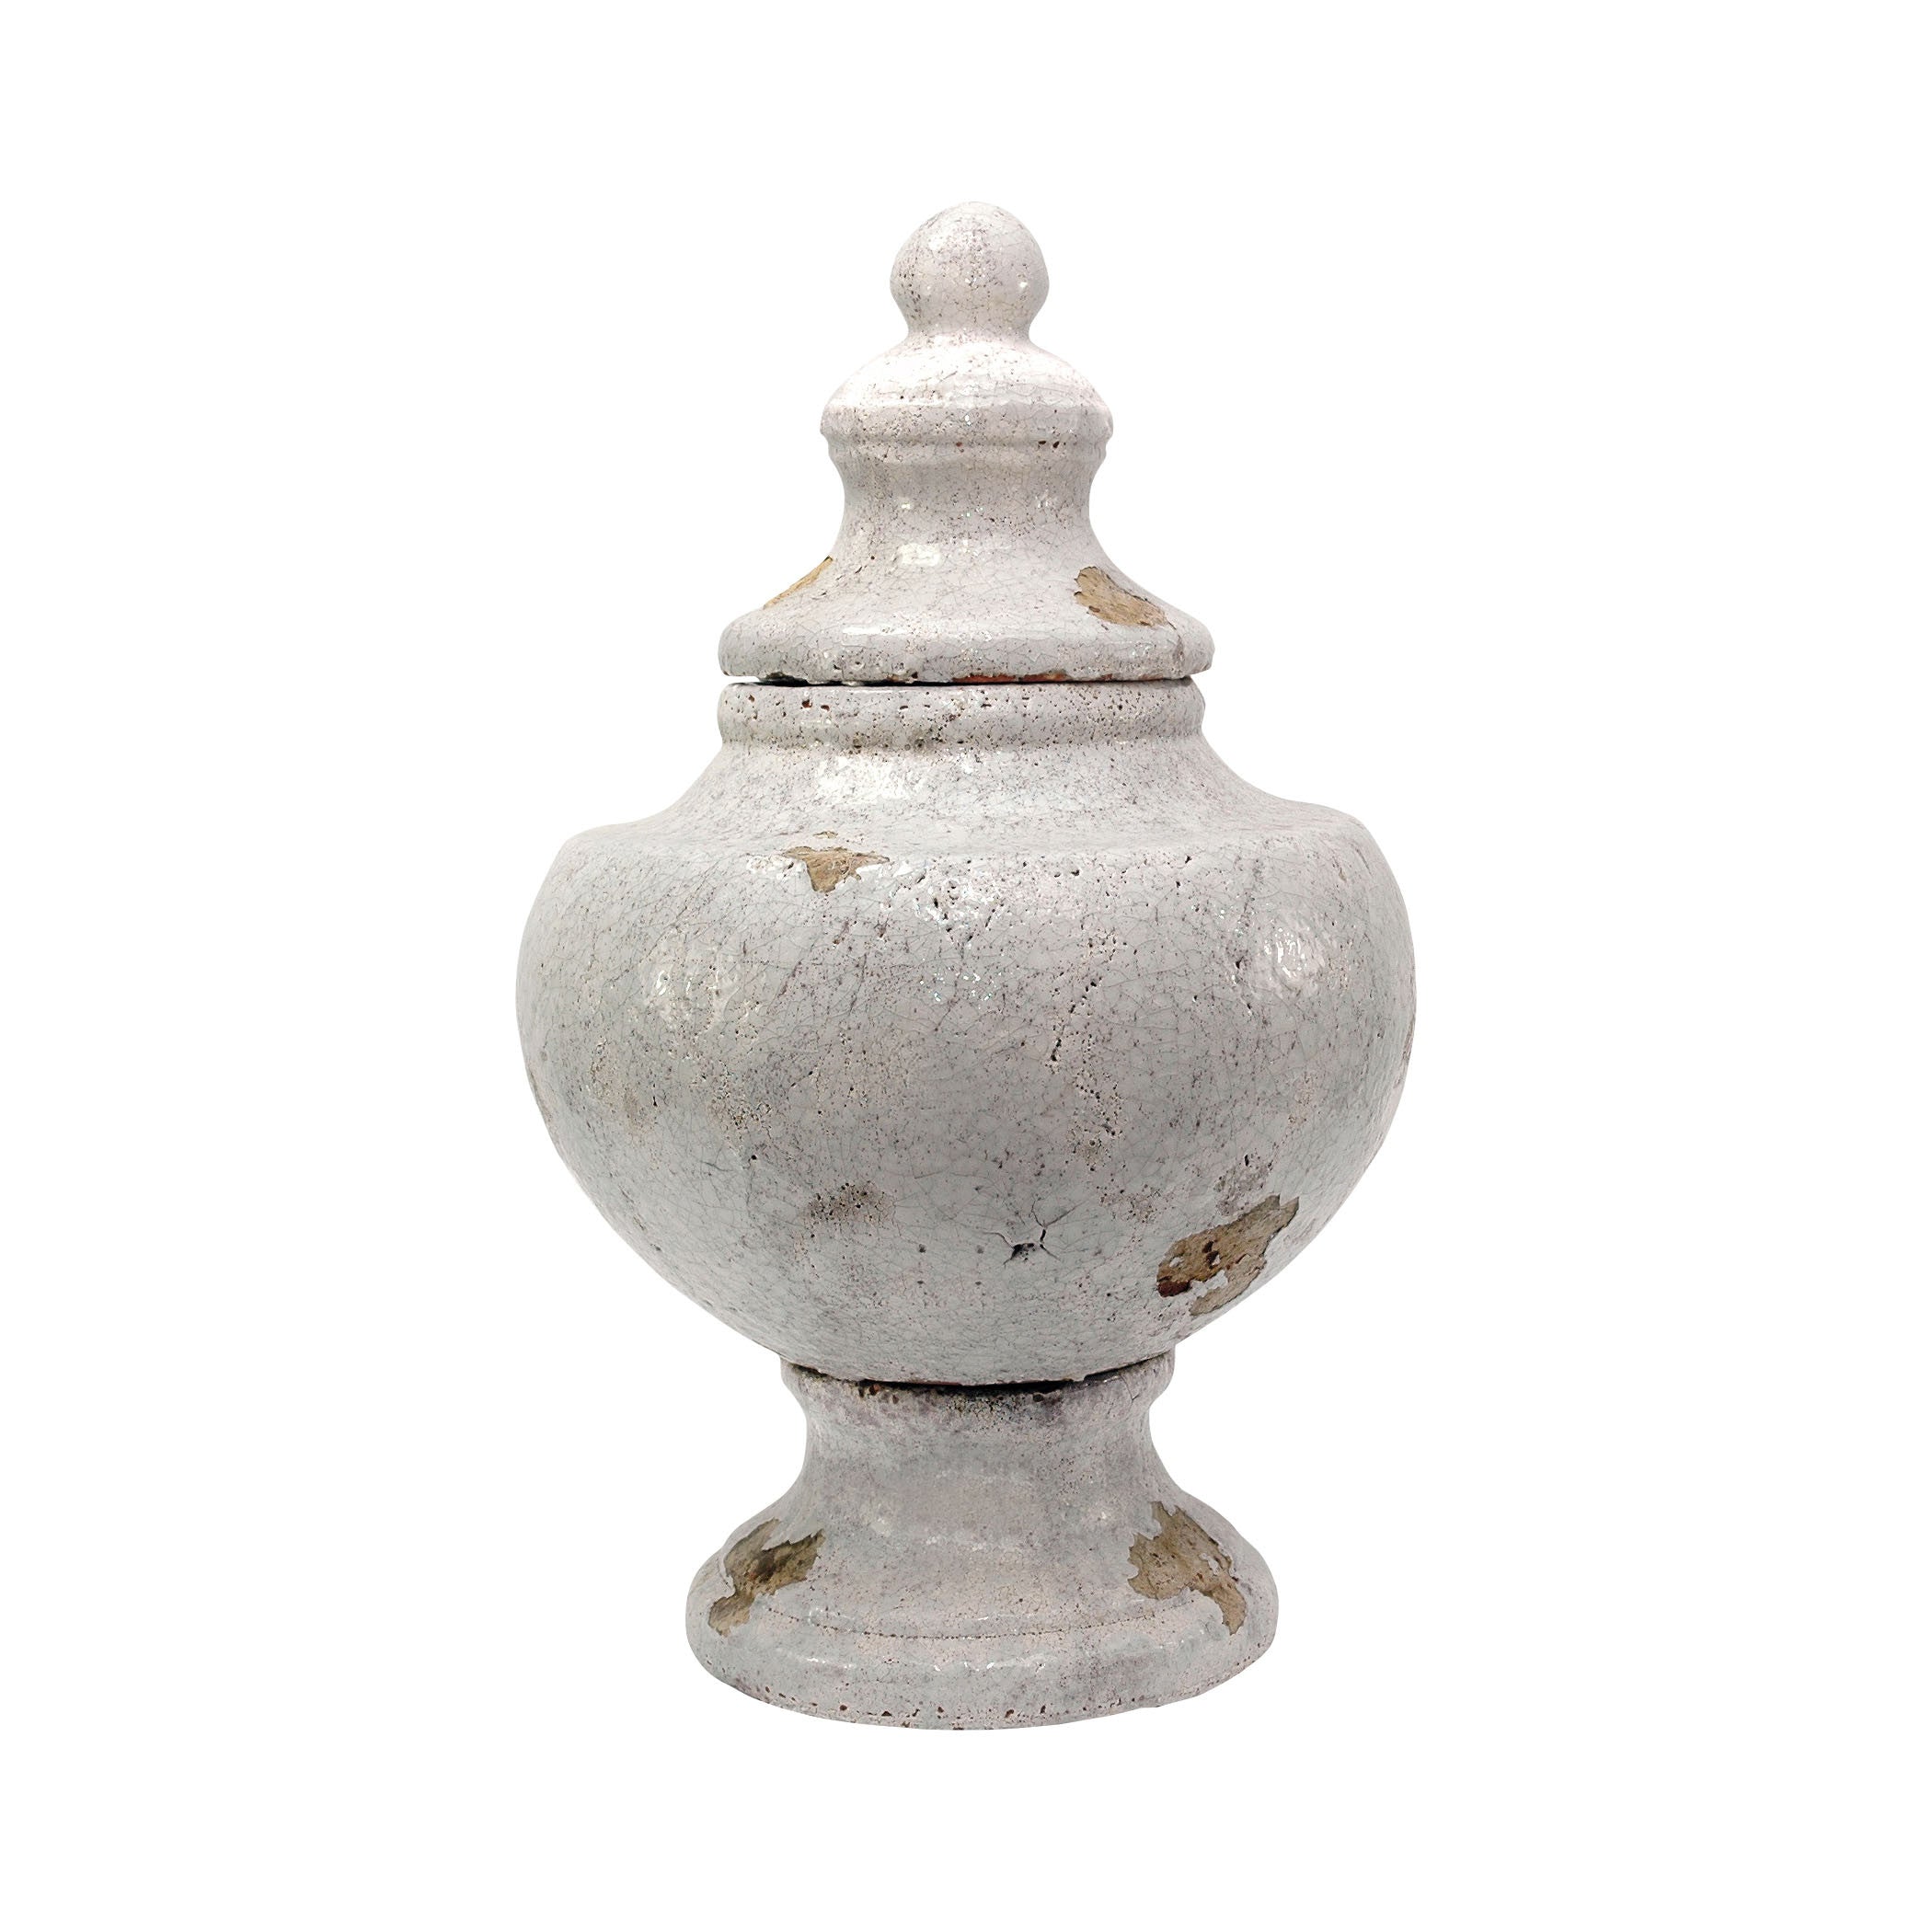 Pomeroy Pom-563003 Castleton Collection Antique White Crackle Finish Vase/urn